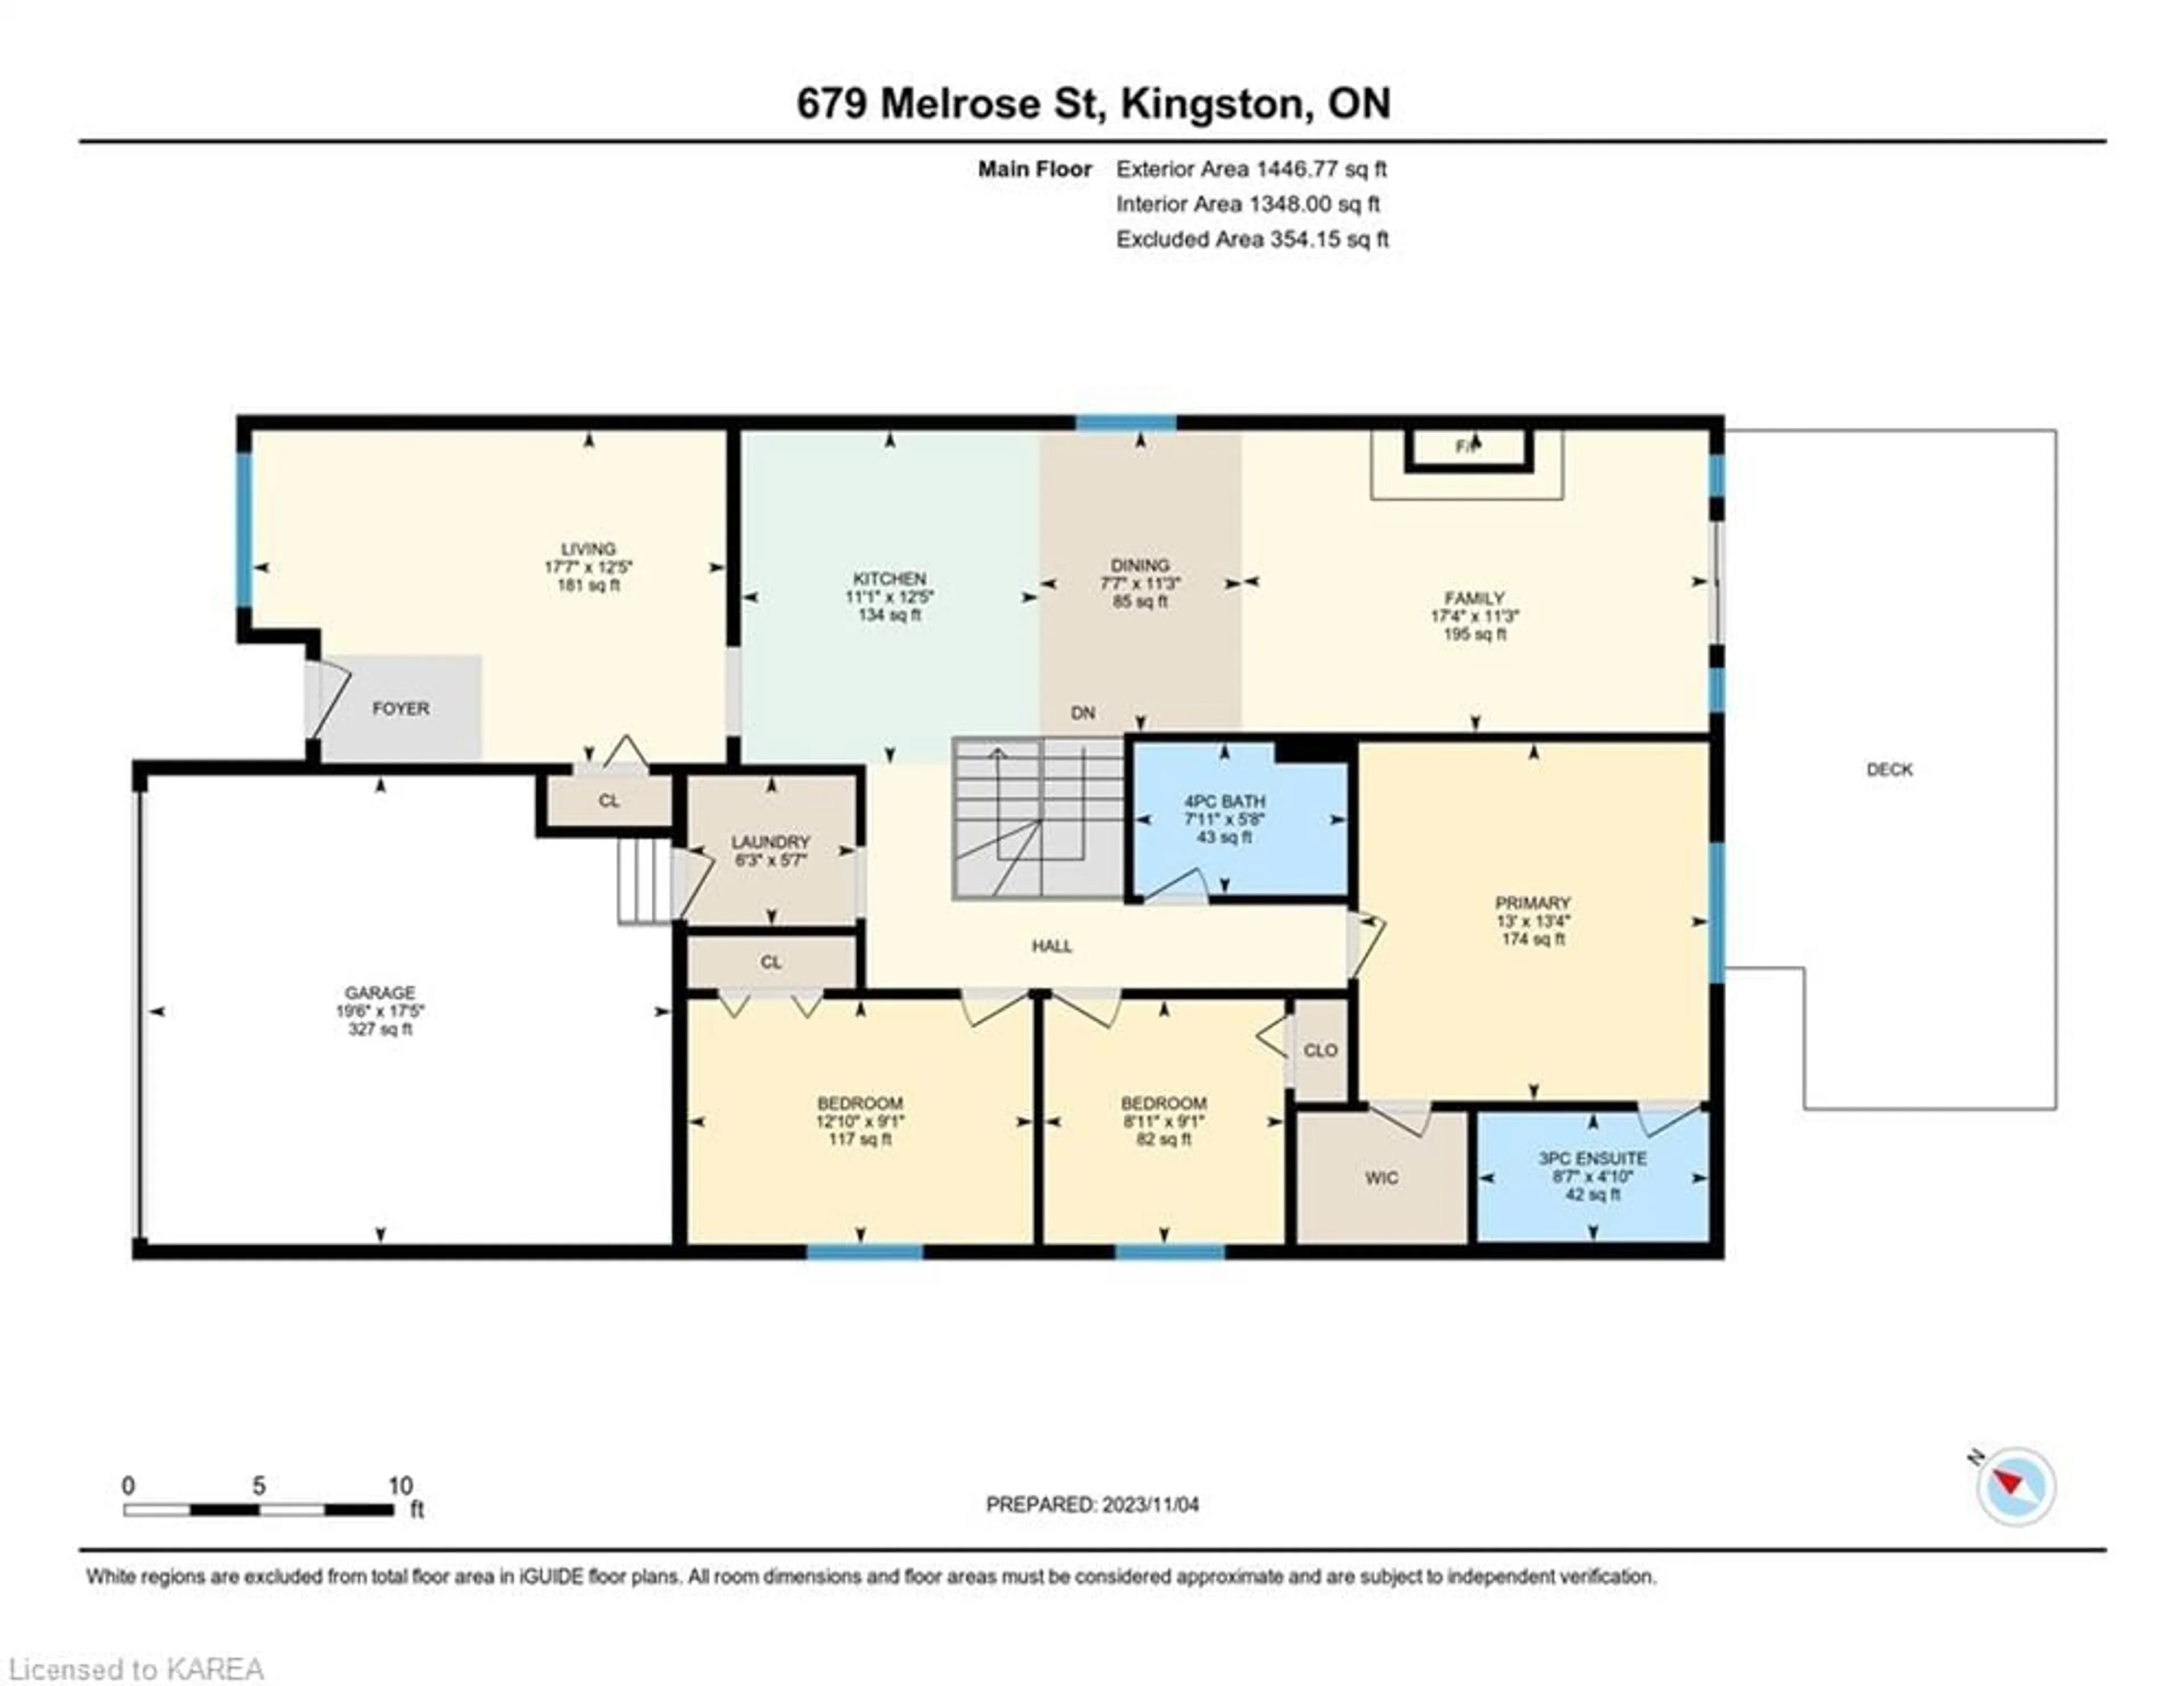 Floor plan for 679 Melrose St, Kingston Ontario K7M 9G8